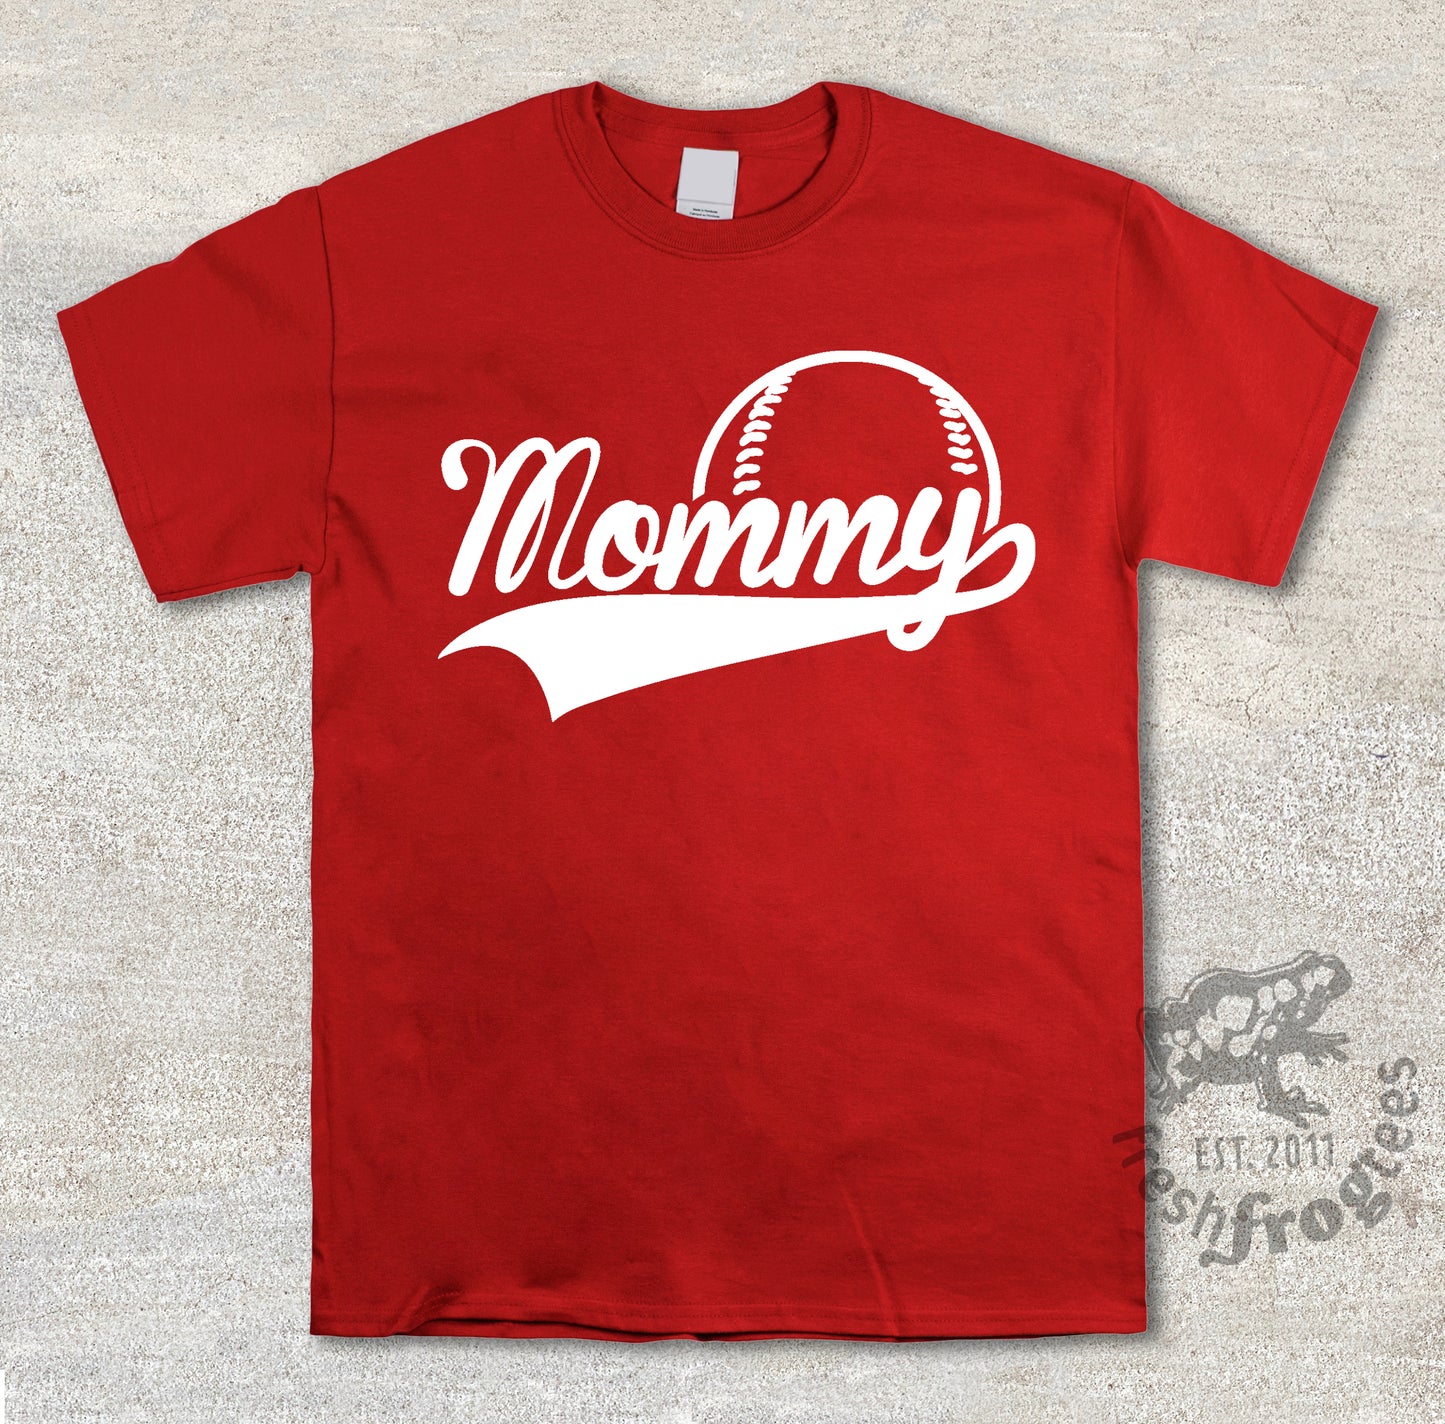 Mommy swoosh baseball jersey style shirt